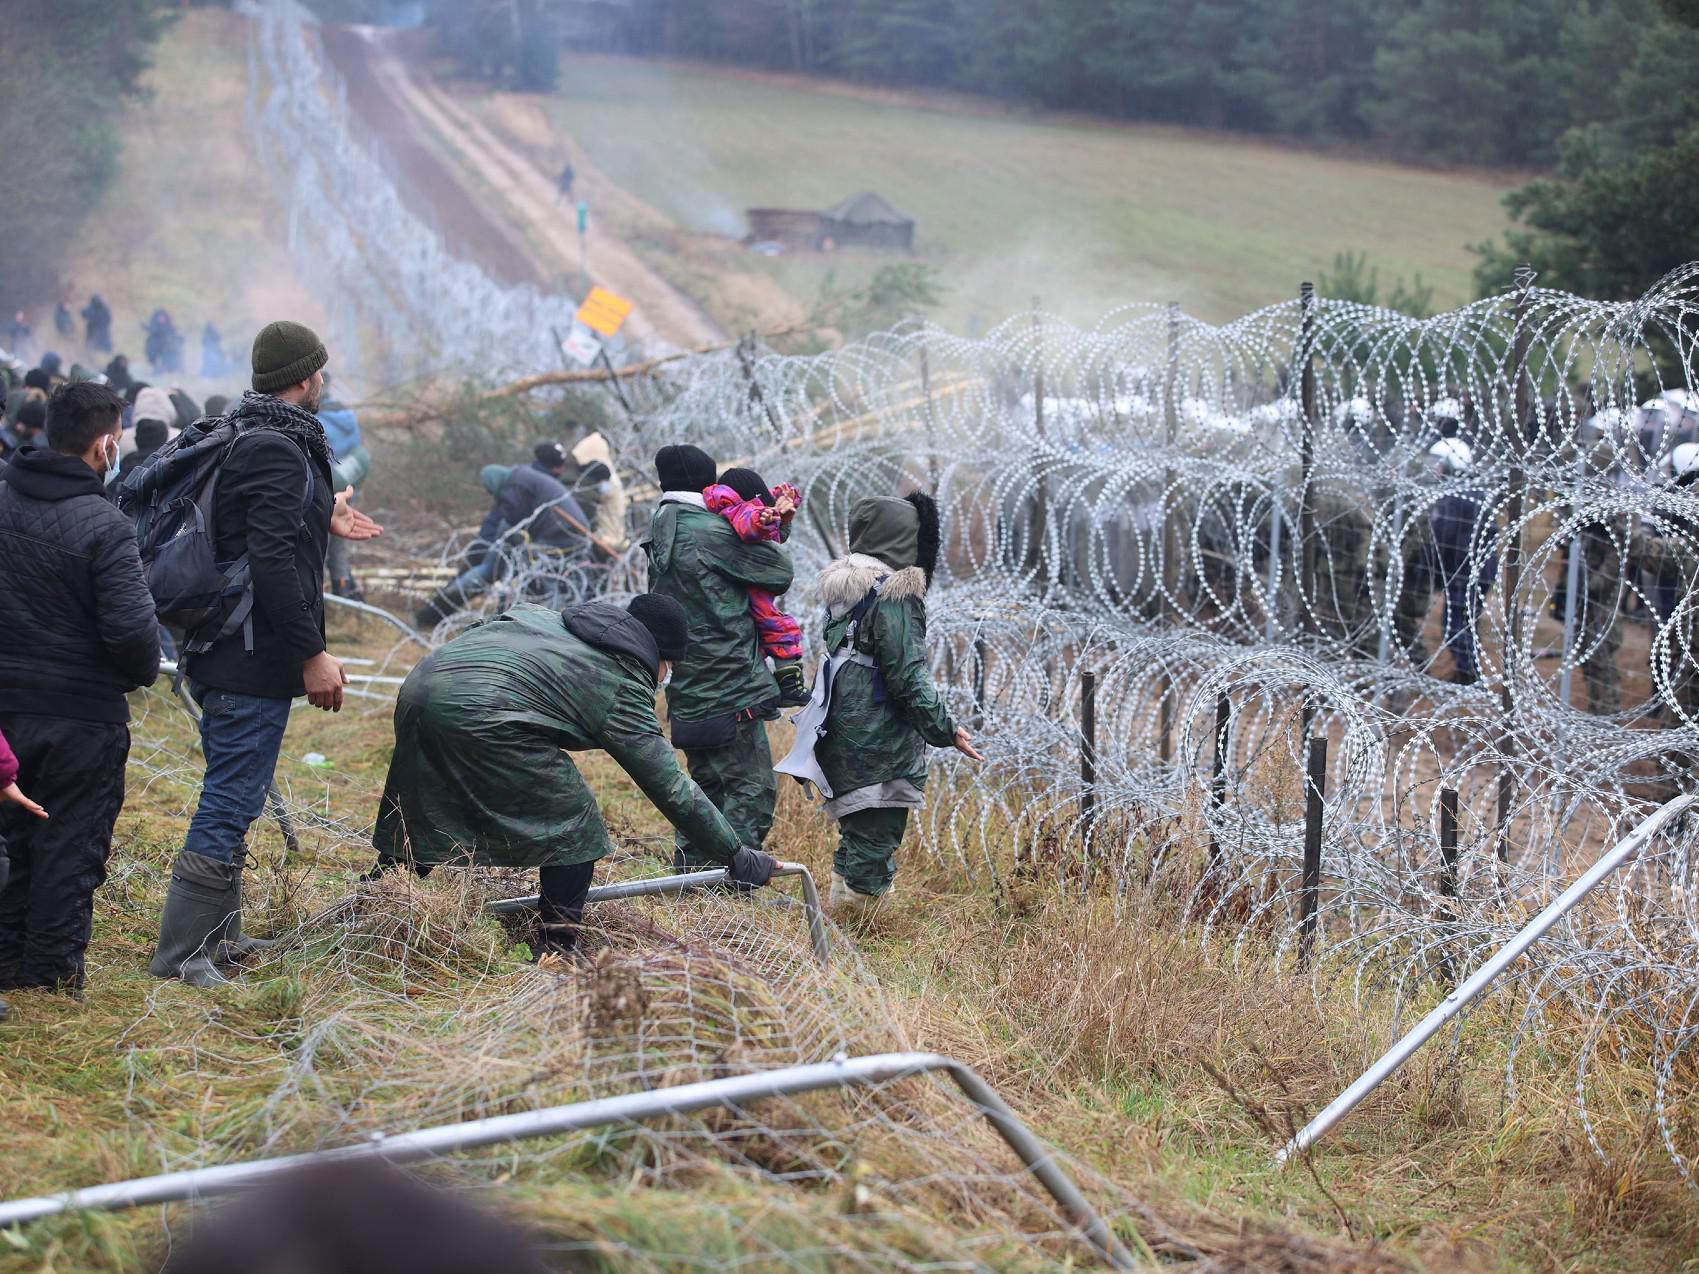 La Polonia accusa gli 007 ucraini di aiutare i migranti a superare i confini"